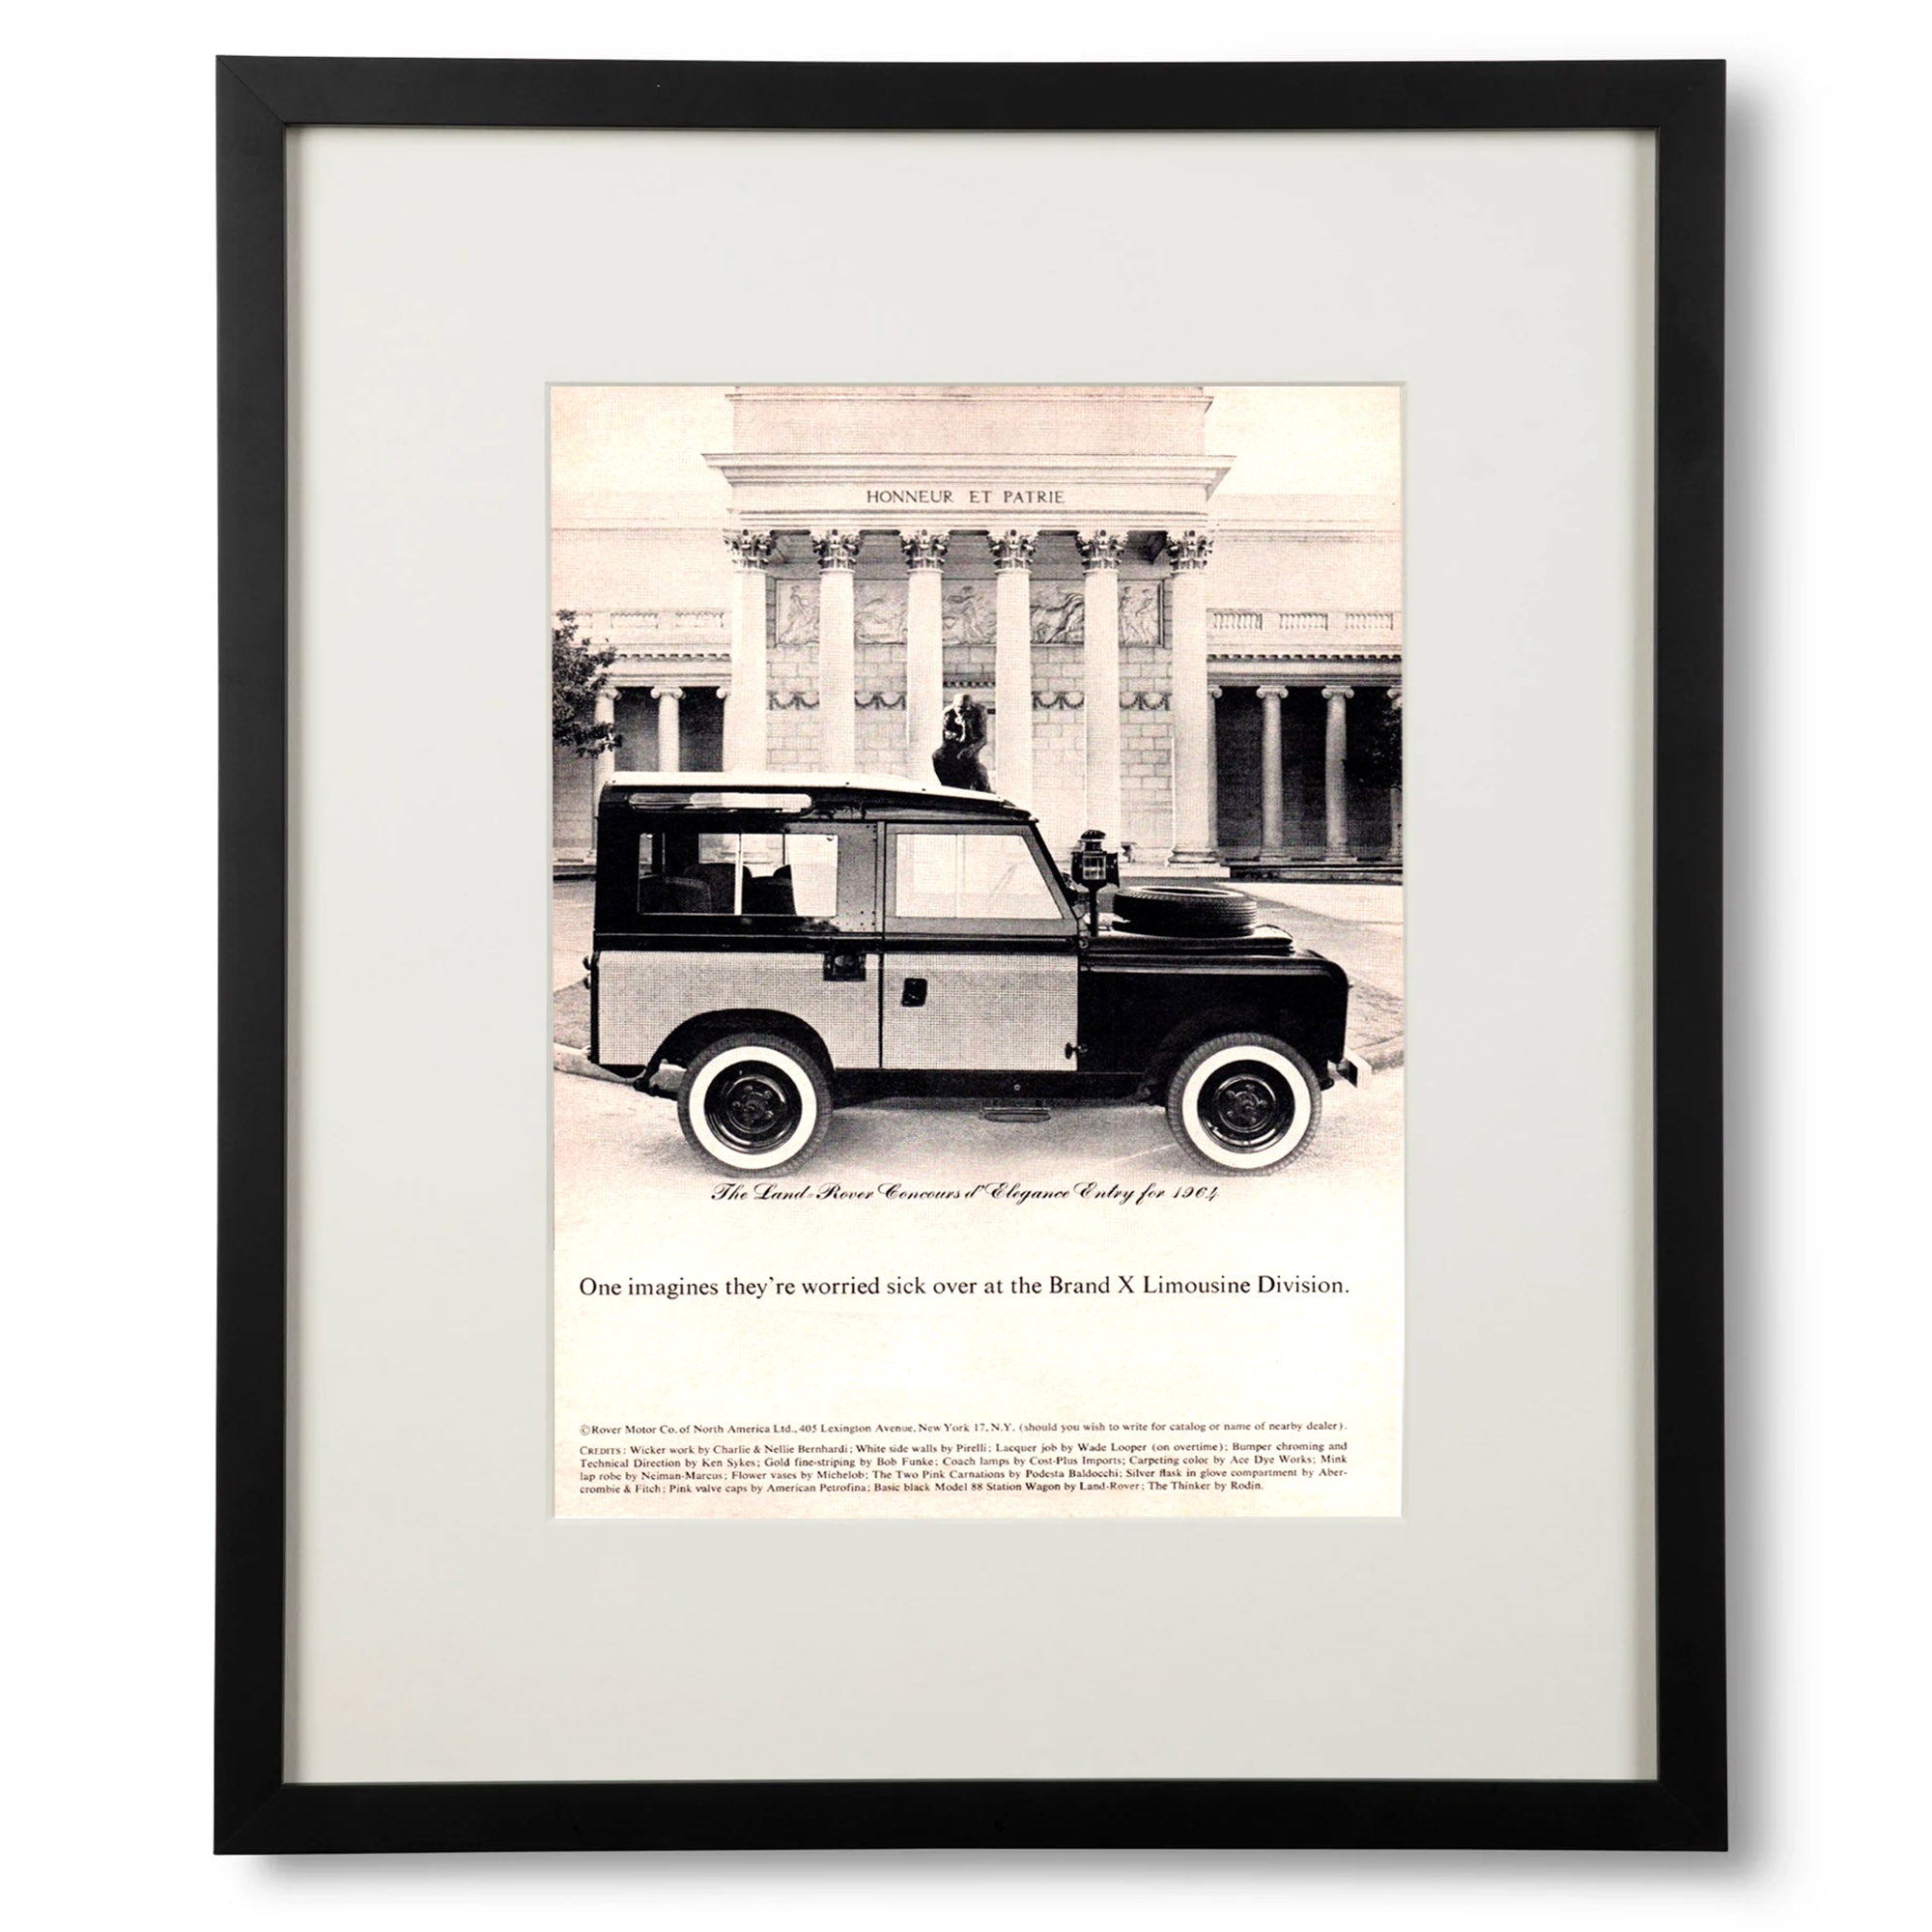 Framed Land Rover Defender Concours d'Elegance 1964 Ad